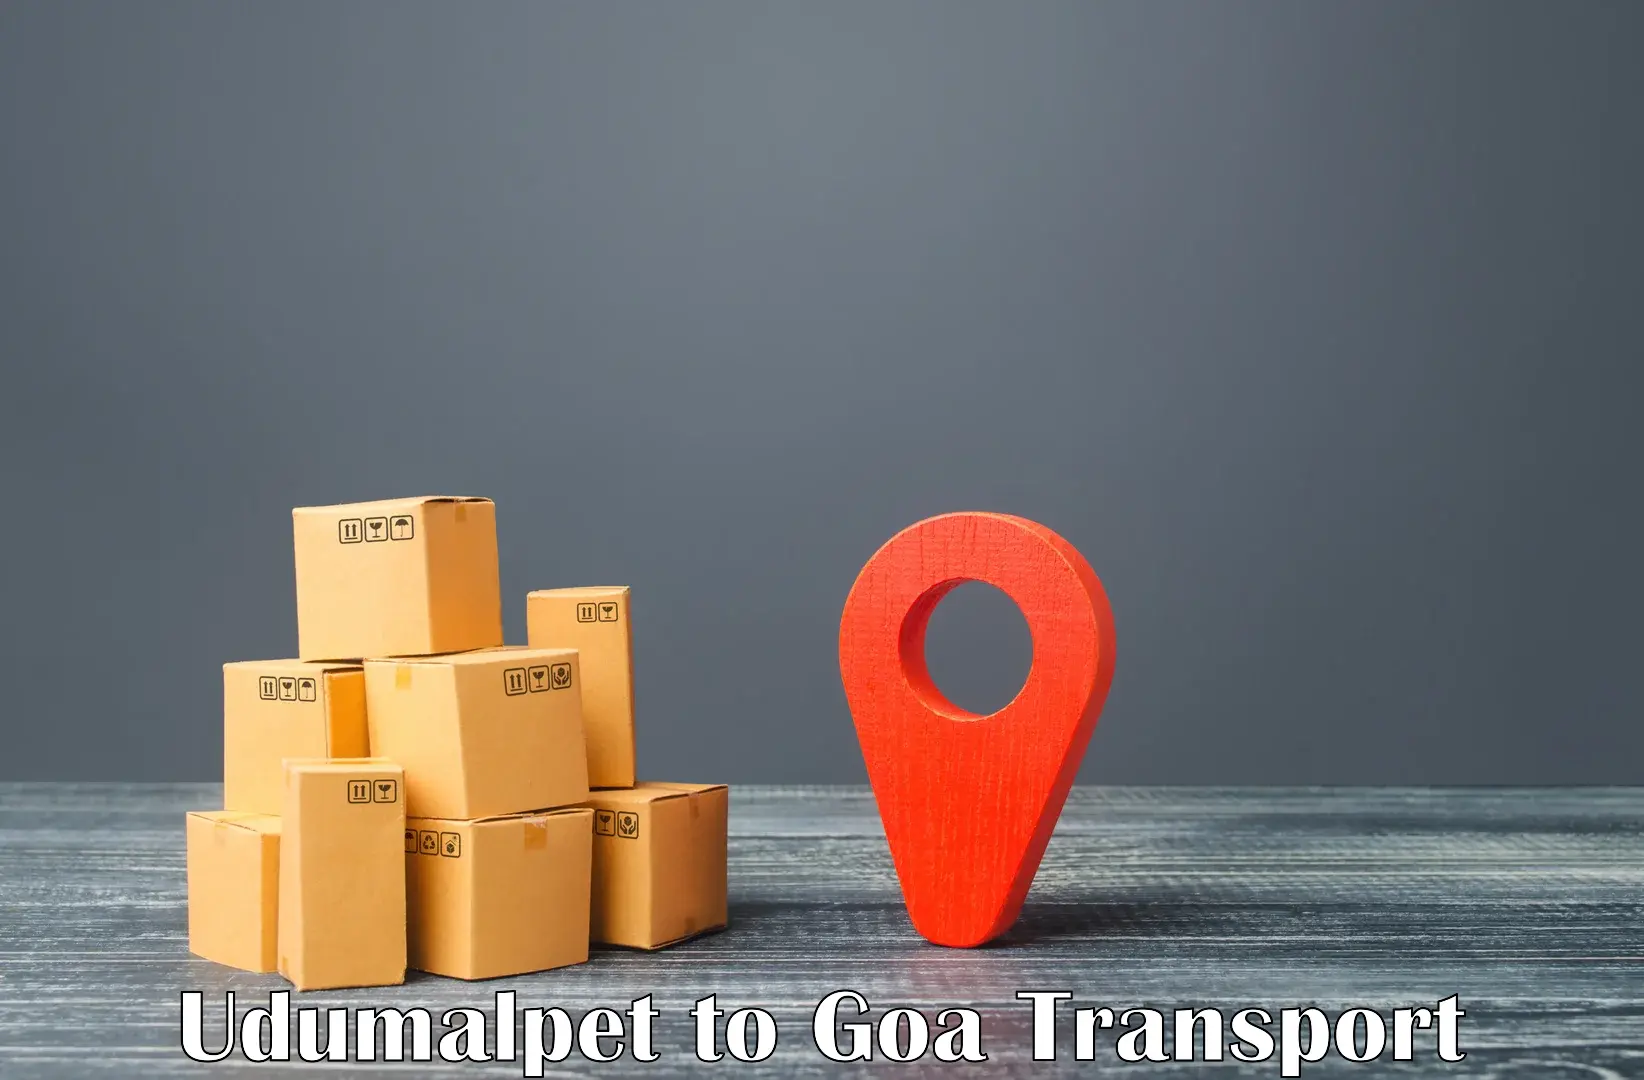 Logistics transportation services Udumalpet to Margao